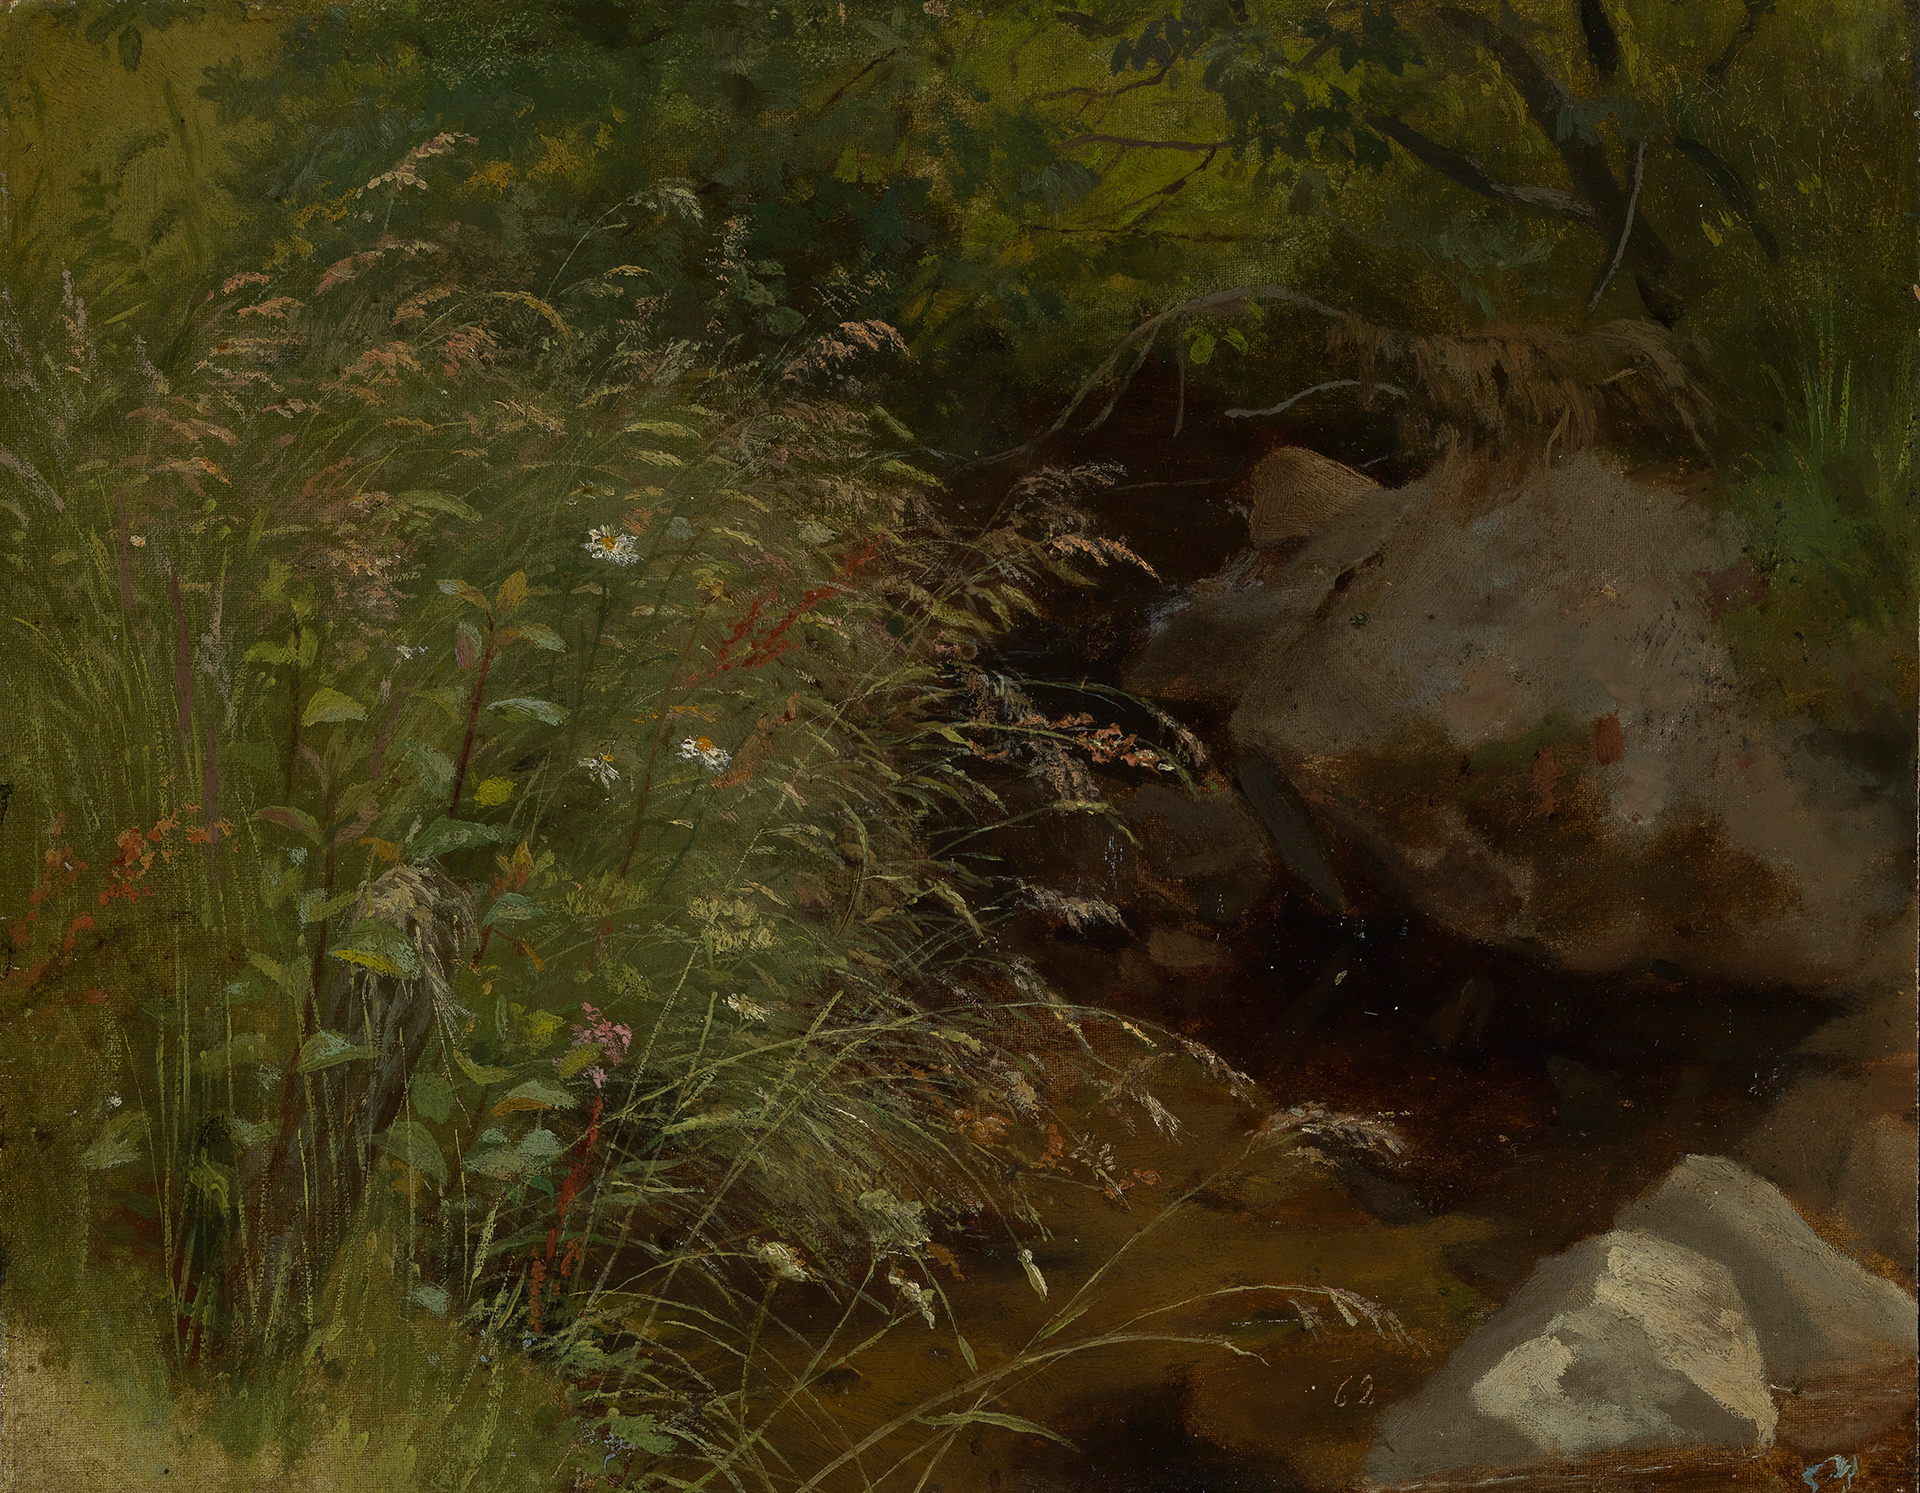 Auf Hans Thomas Gemälde ist neben den Gräsern ein kleiner Bach zu sehen.